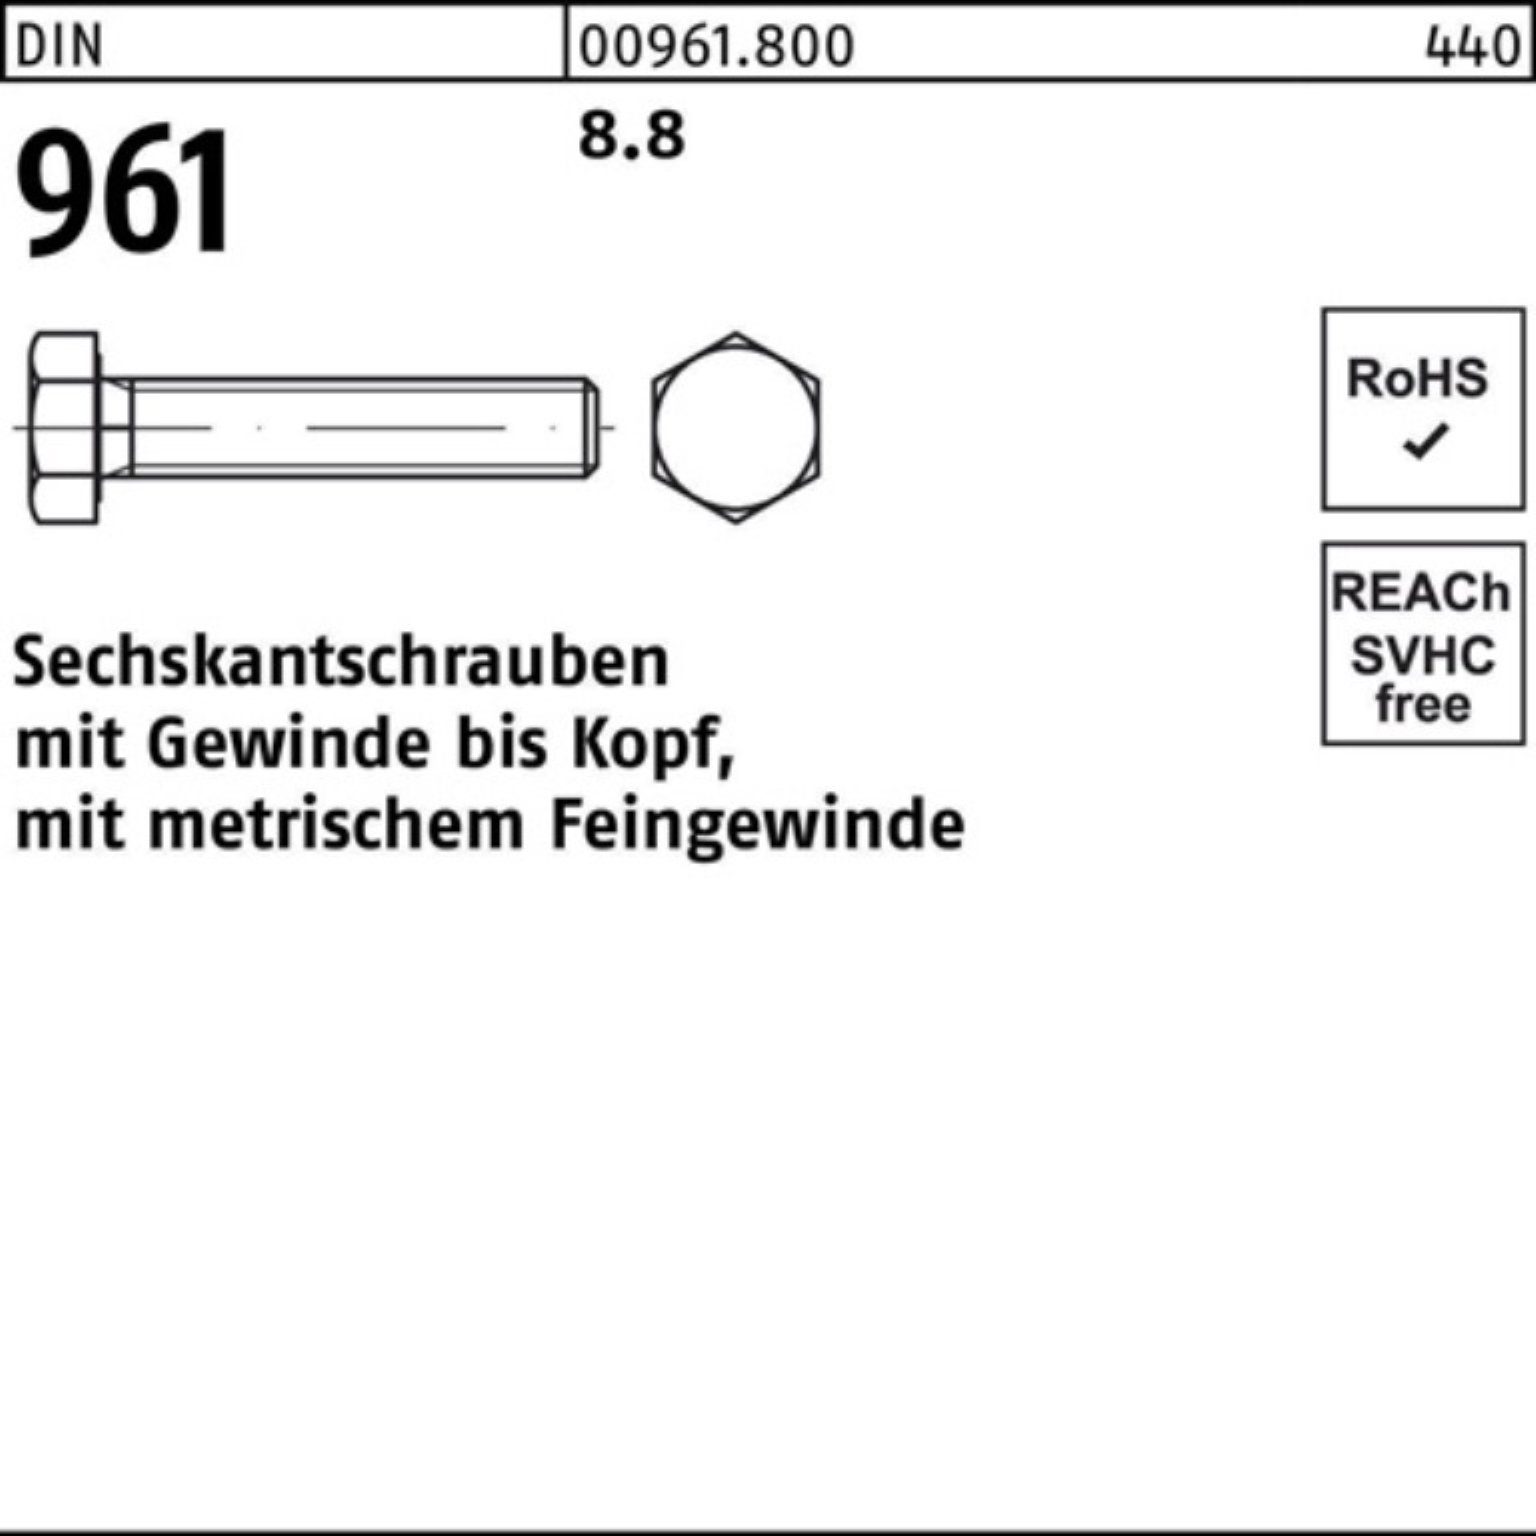 Reyher 40 VG DIN Sechskantschraube Pack M20x1,5x 961 Sechskantschraube 100er Stück 8.8 25 DIN